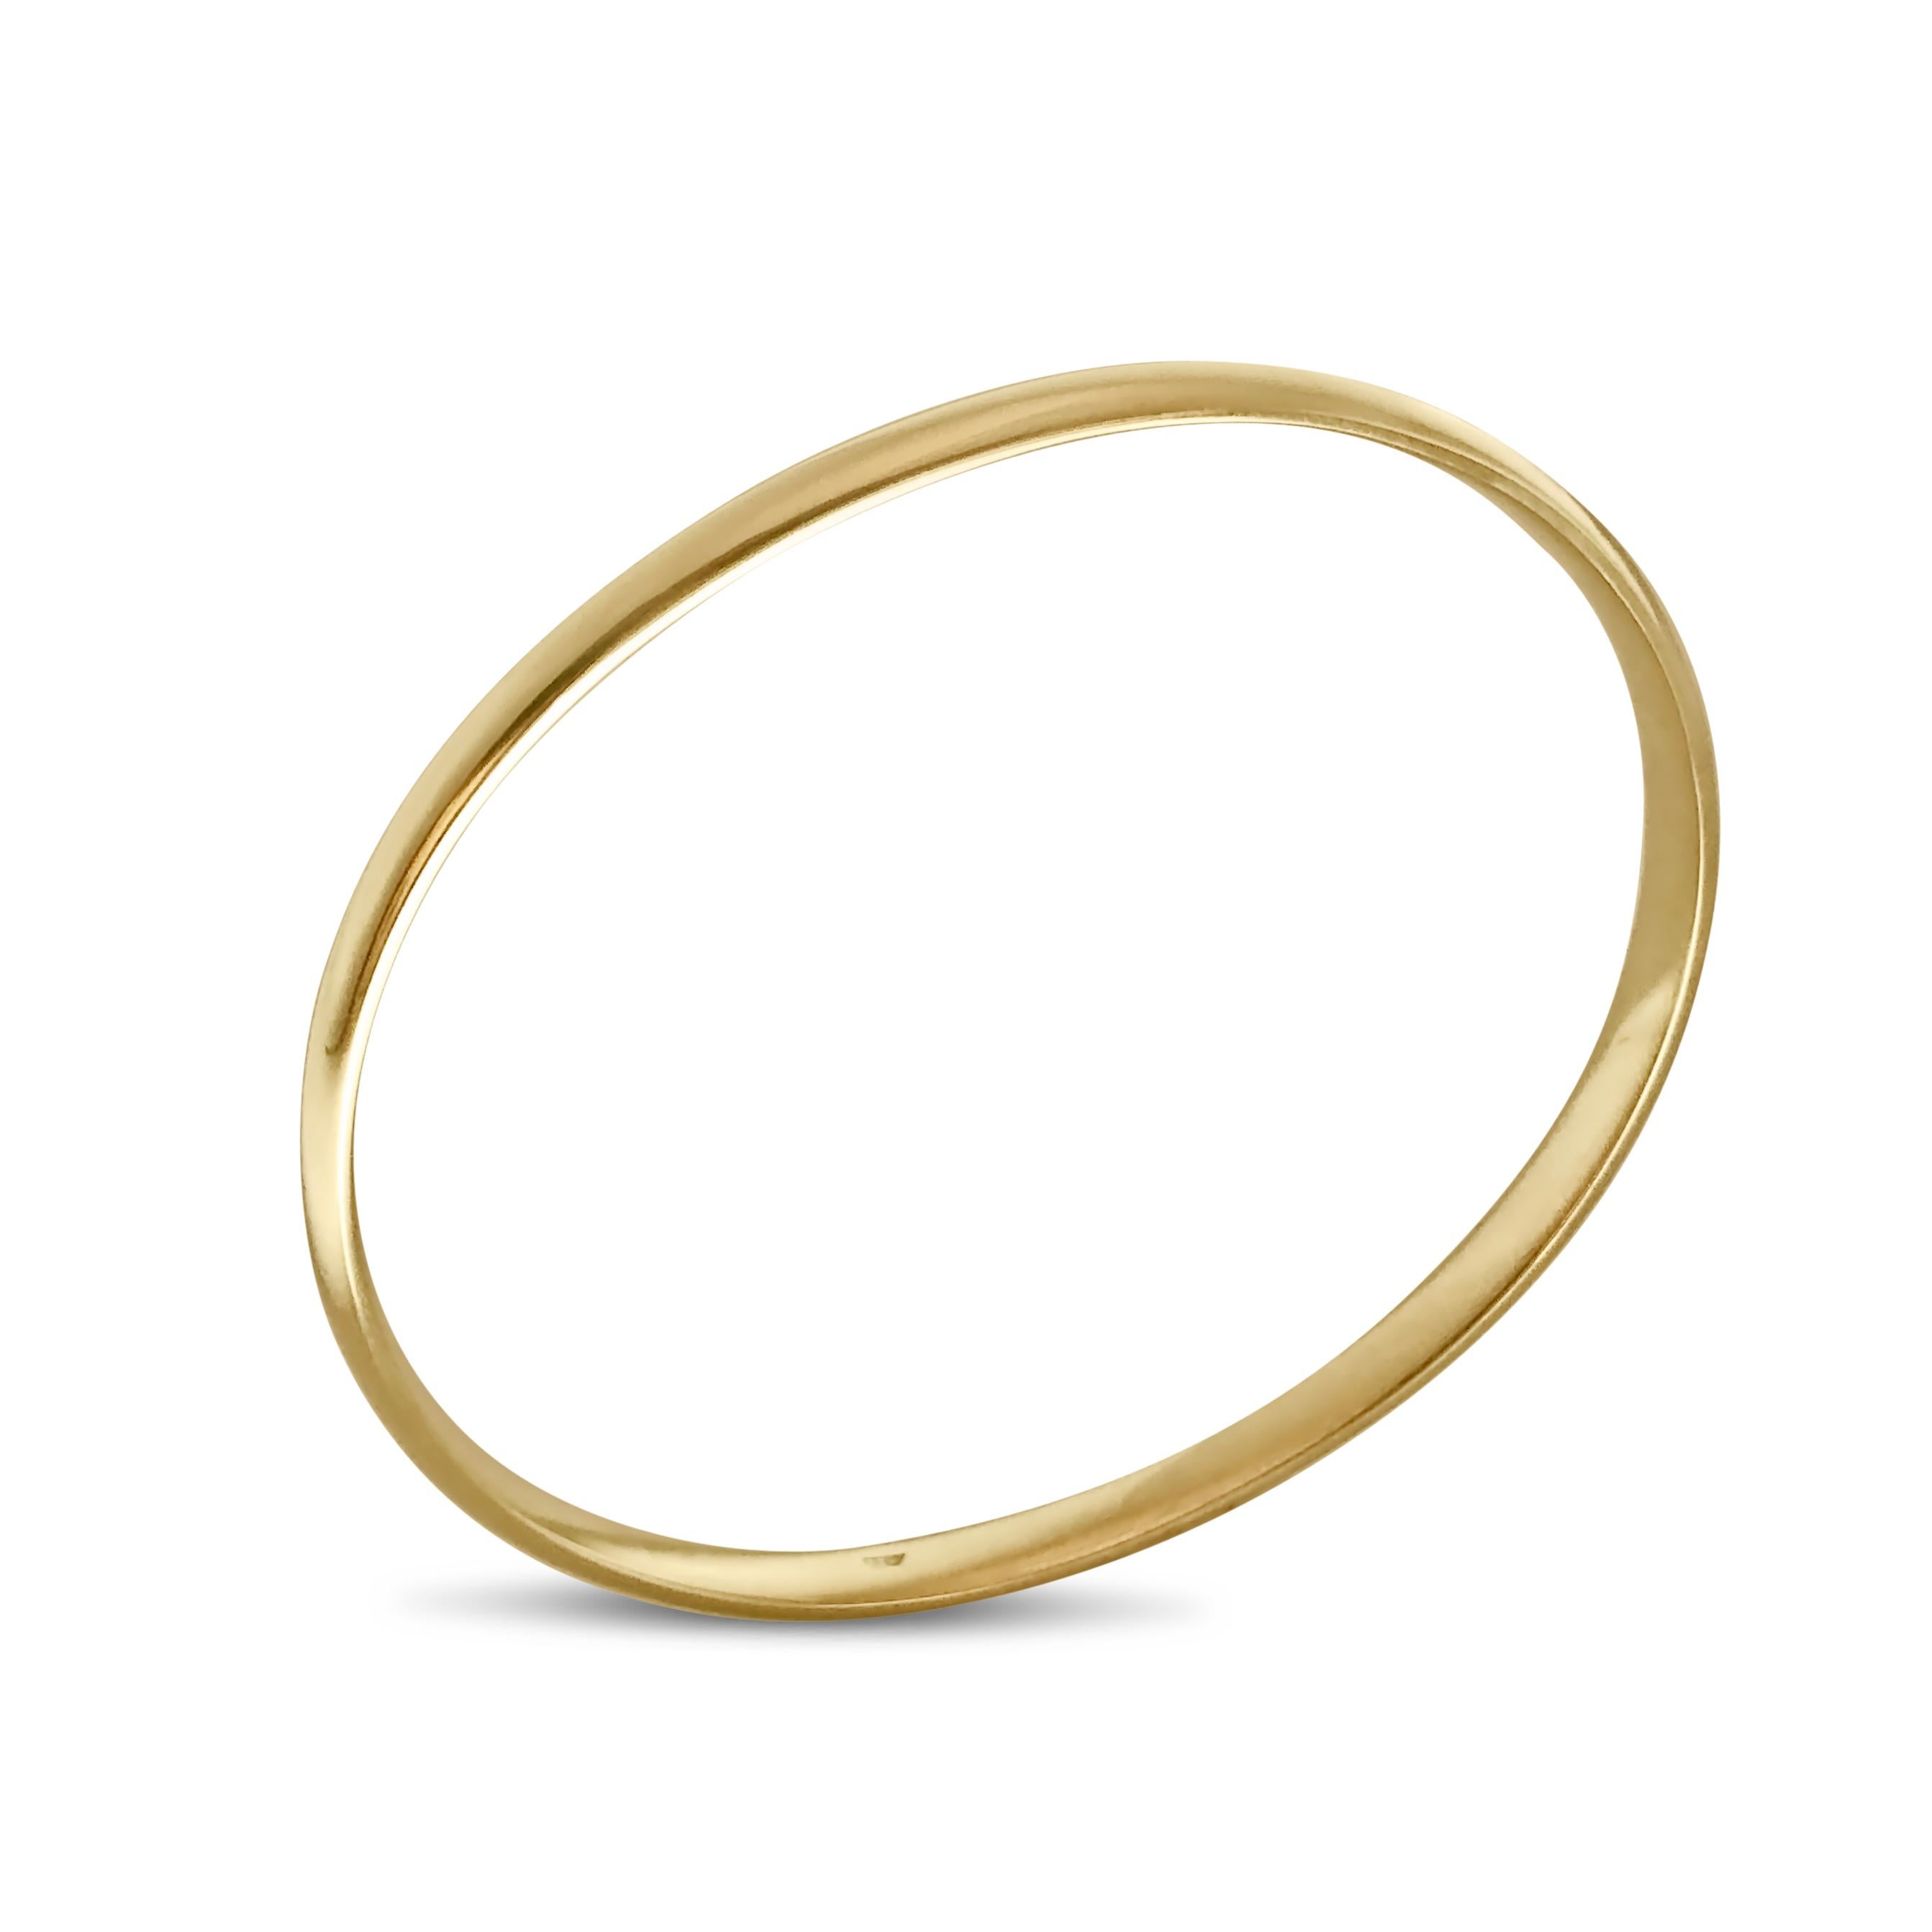 Notre bracelet rigide de forme ovale, à enfiler, est fabriqué en or jaune 14 carats. D'une largeur de 5 mm, c'est la pièce décontractée parfaite qui est vraiment intemporelle avec une attitude.

Spécifications :
- Forme : Rond
- Métal(s) : Or jaune